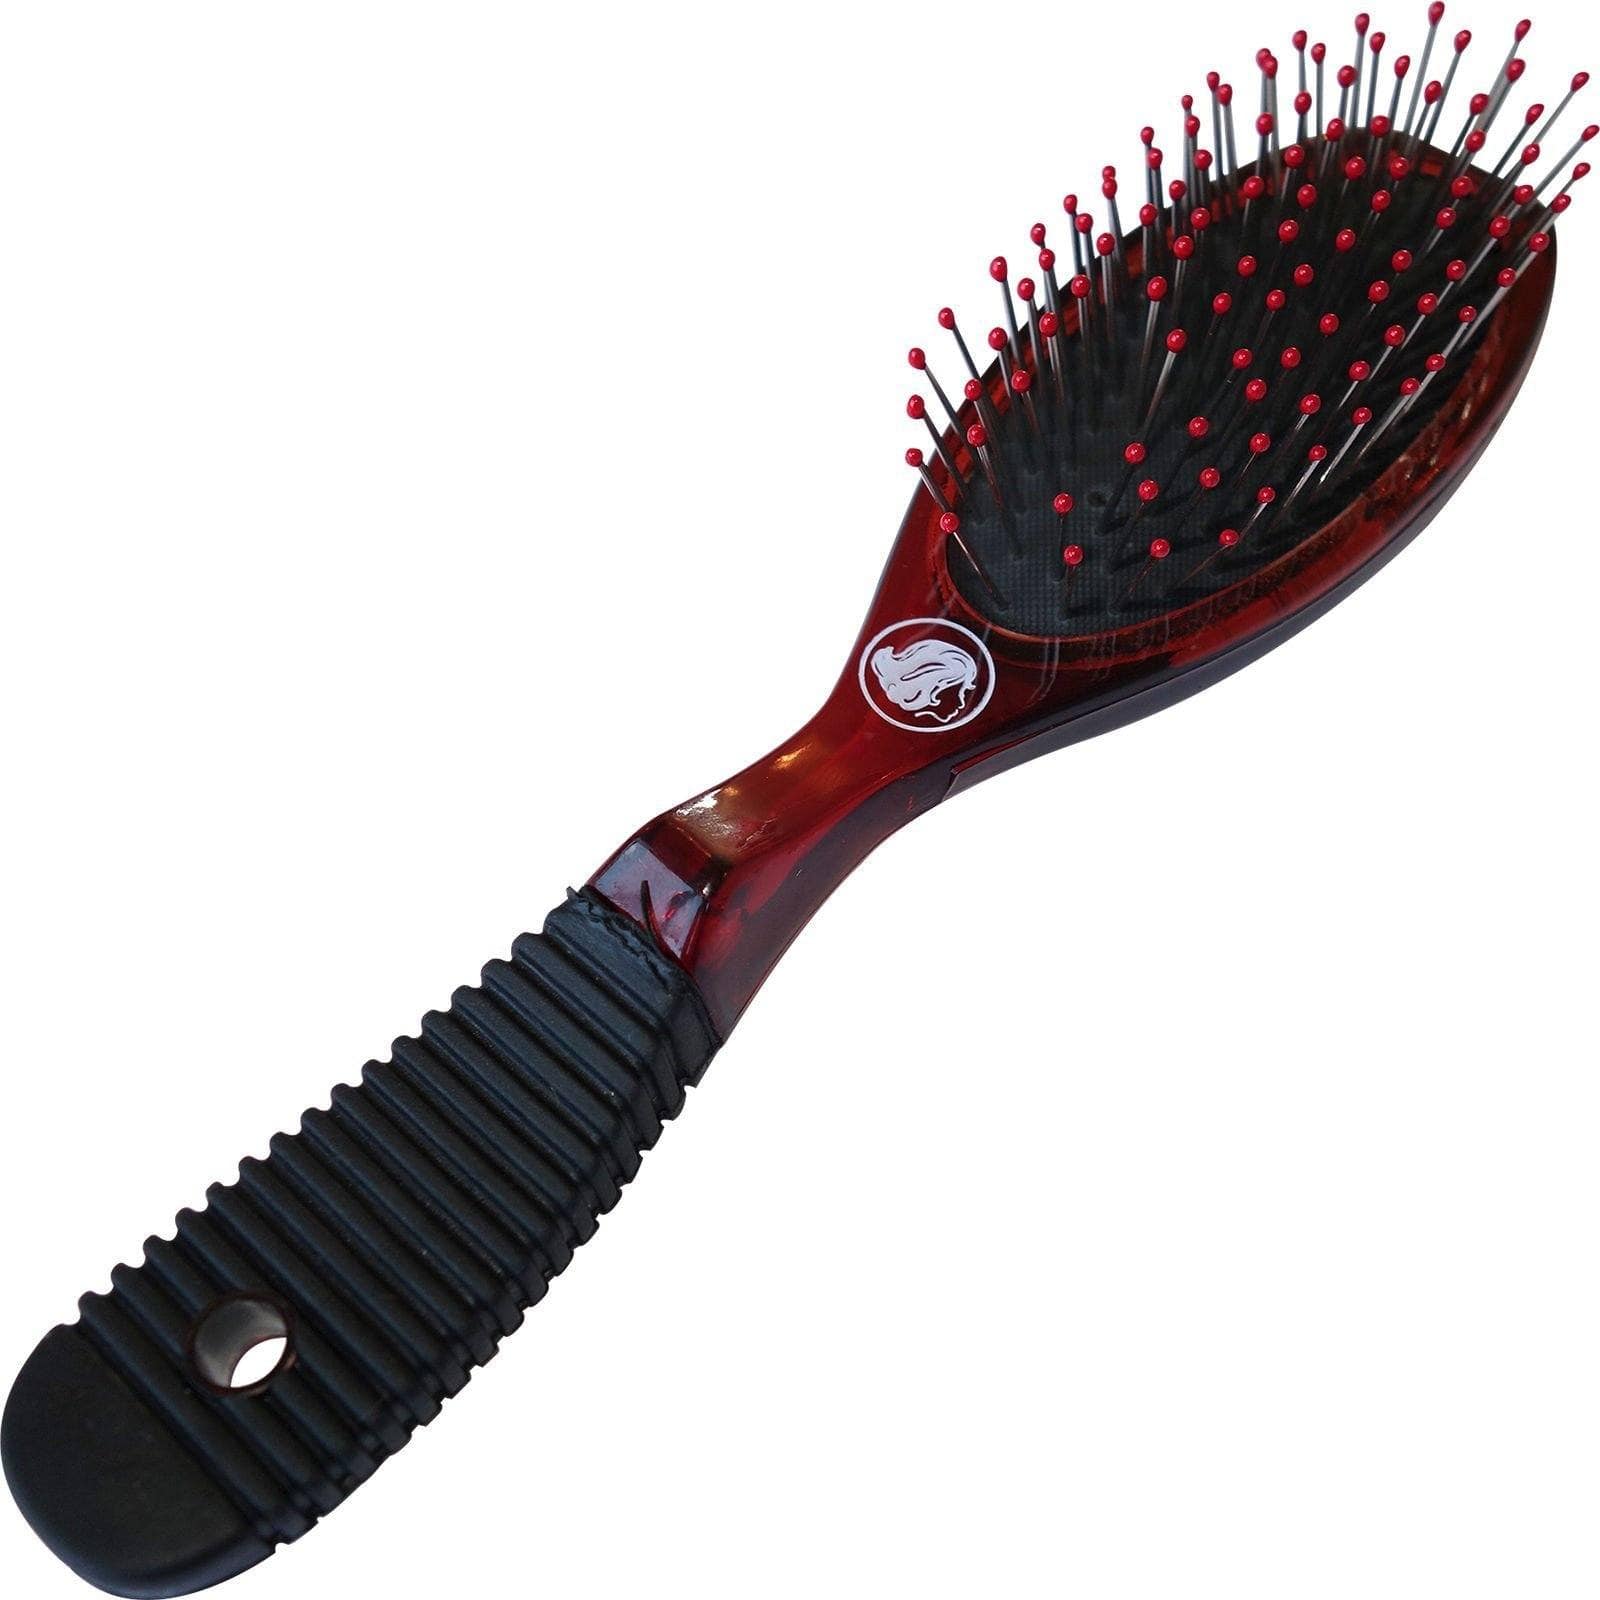 Paddle Hair Brush Comb Girls Womens Mens Childrens Kid Hairdressing Salon Barber